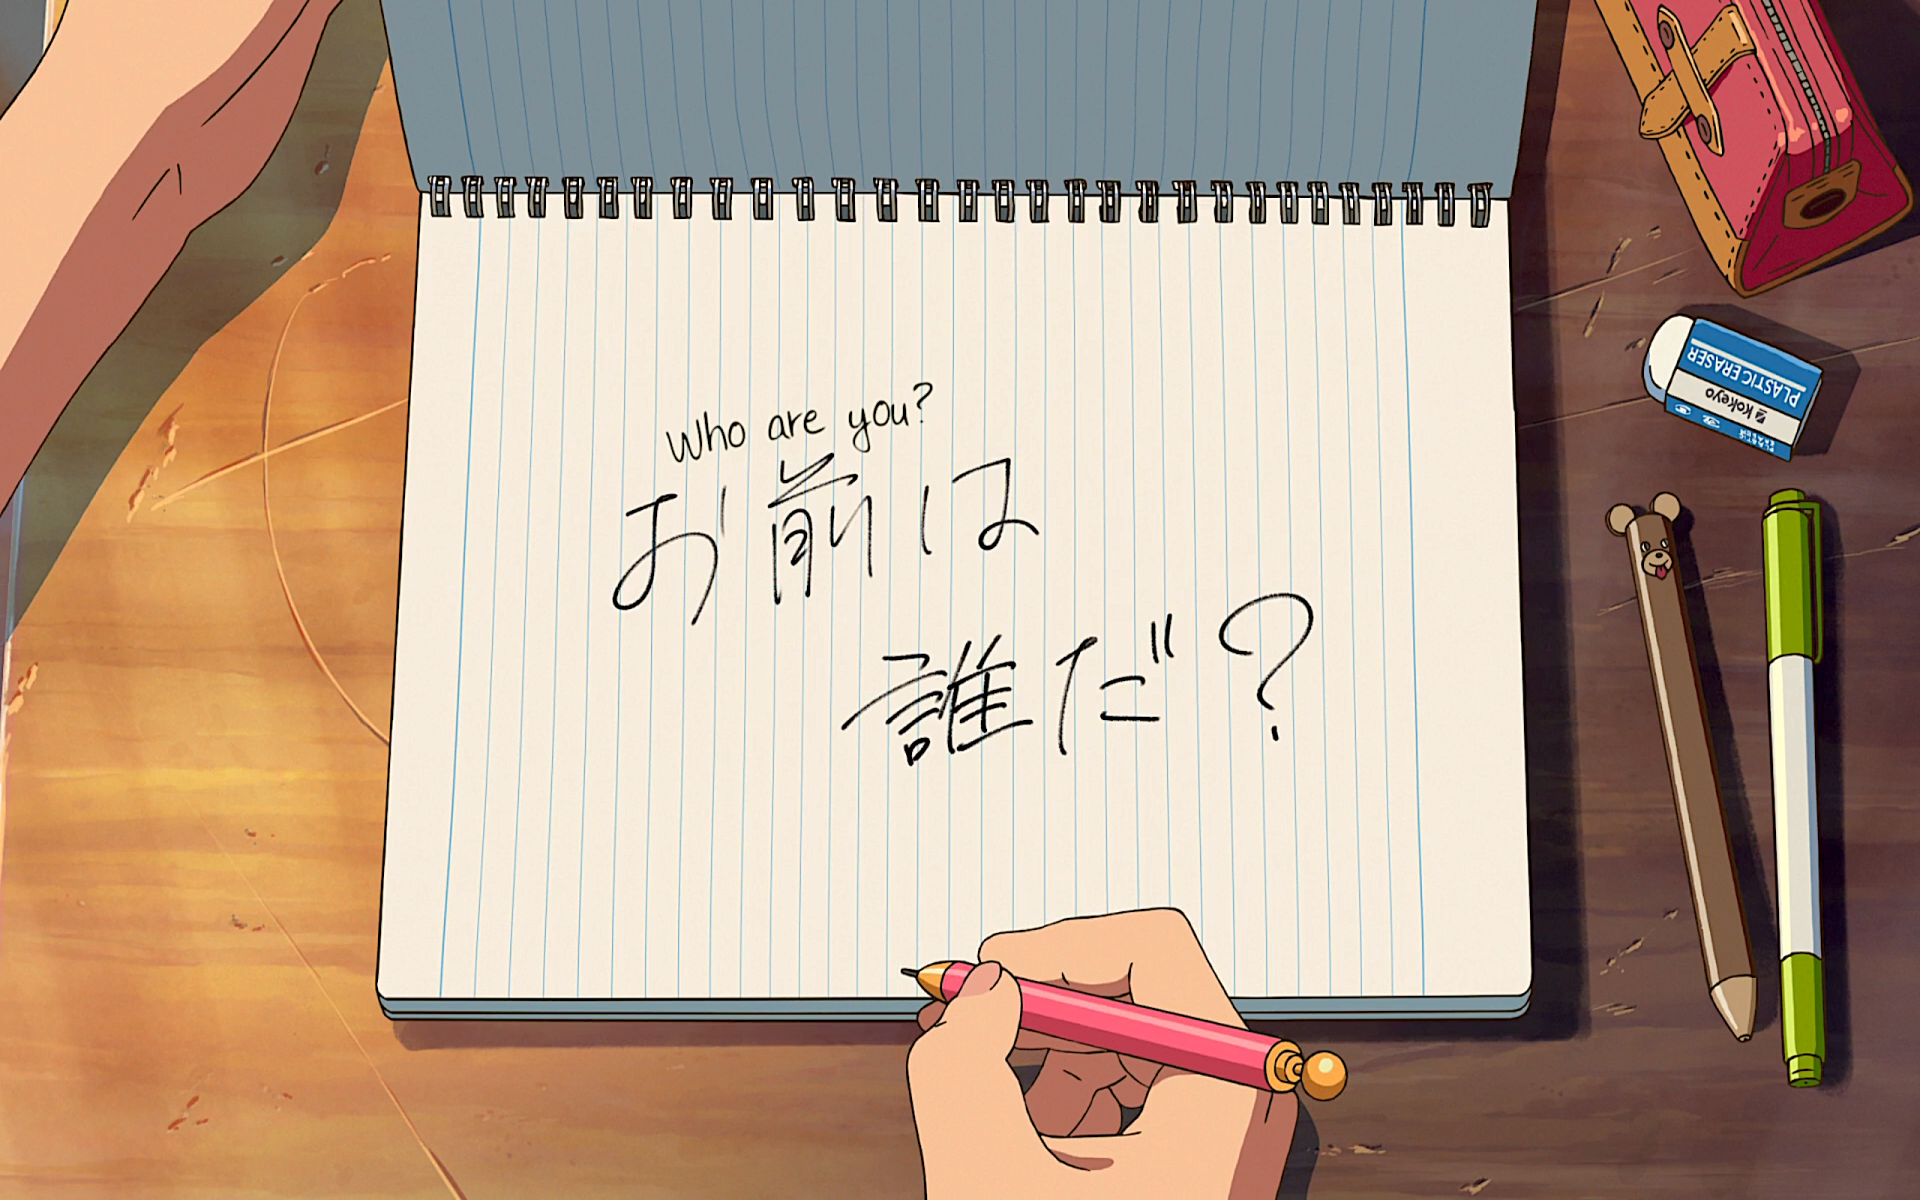 Anime Review: “Jujutsu Kaisen” – Ka Leo o Nā Koa